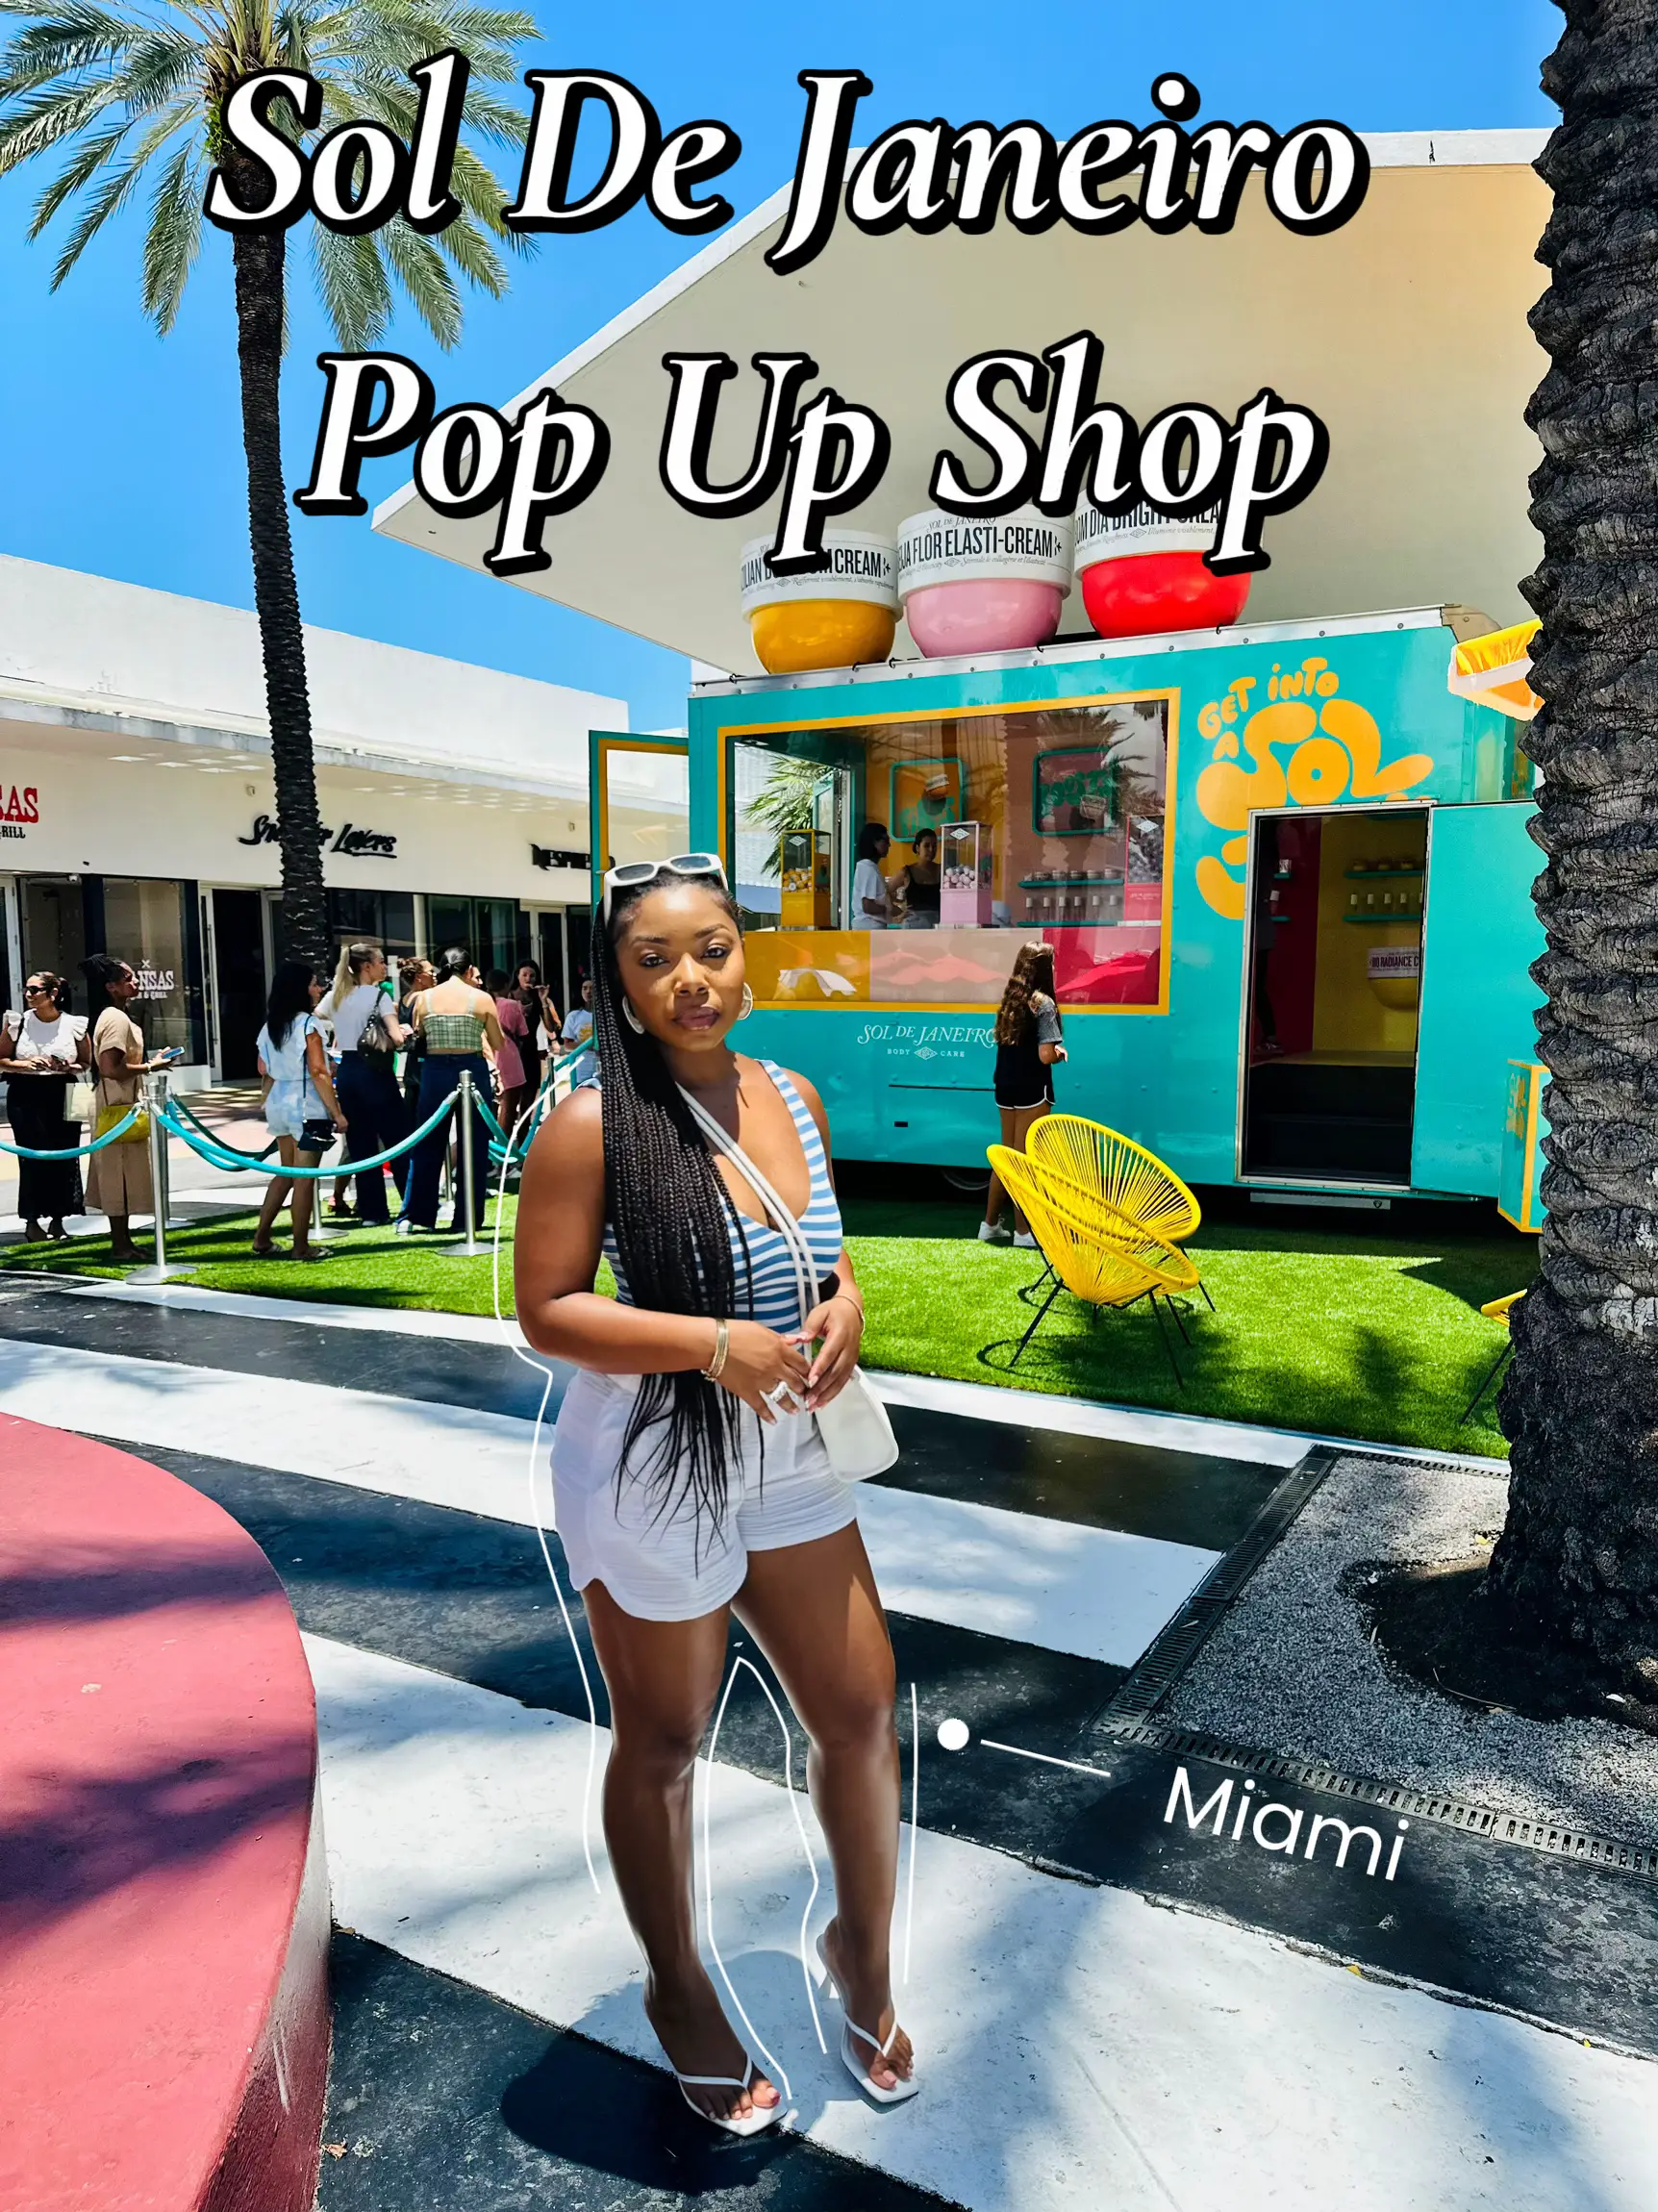 Sol De Janeiro Pop Up Shop Miami's images